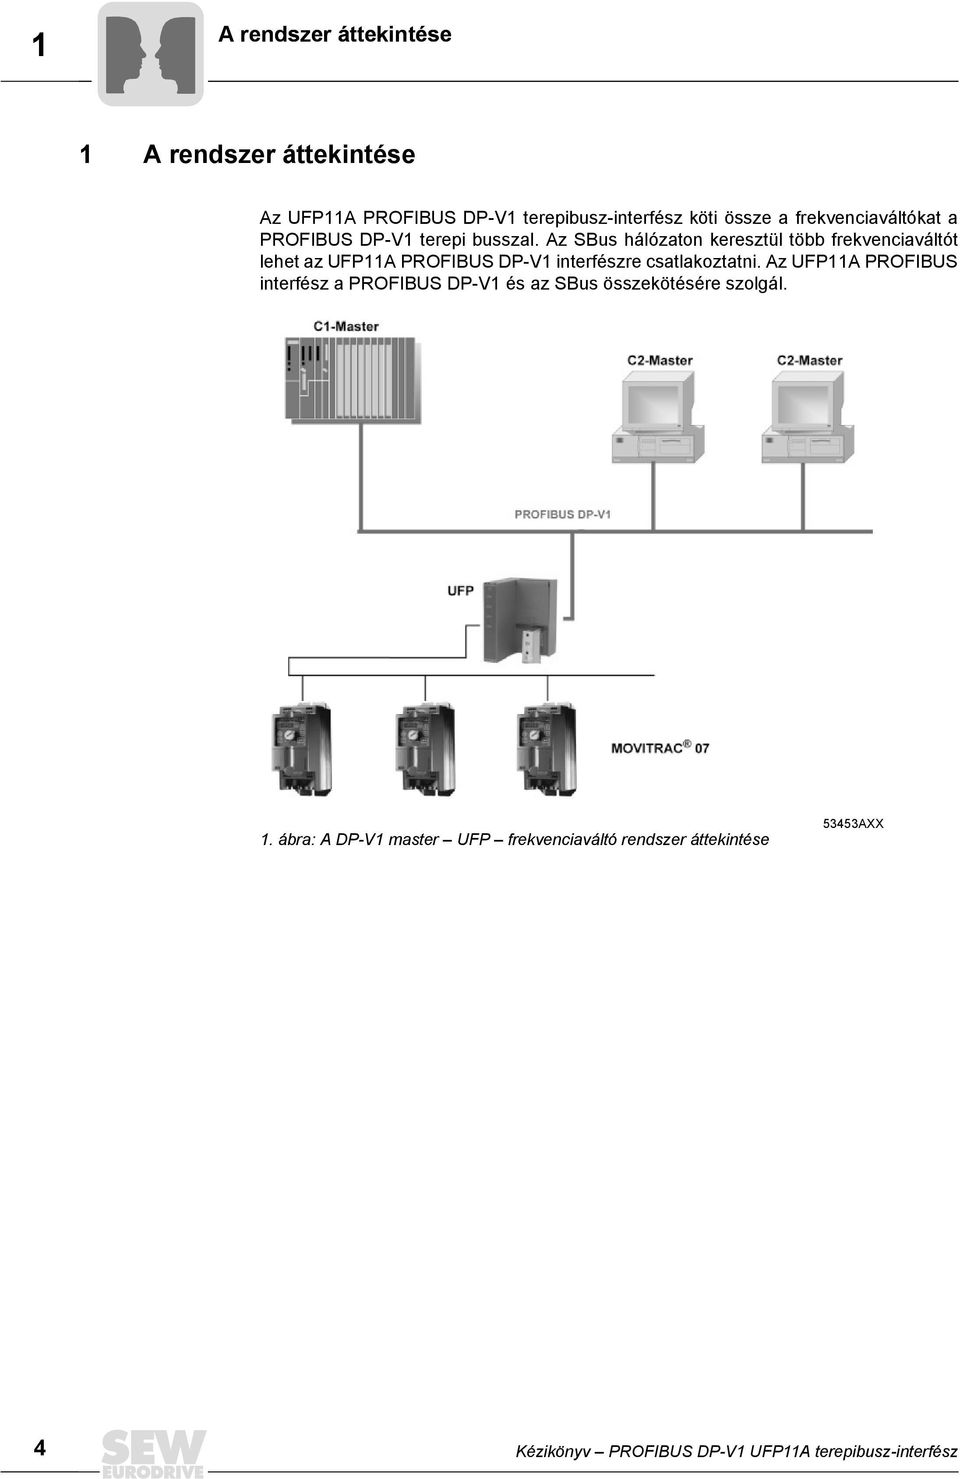 Az SBus hálózaton keresztül több frekvenciaváltót lehet az UFP11A PROFIBUS DP-V1 interfészre csatlakoztatni.